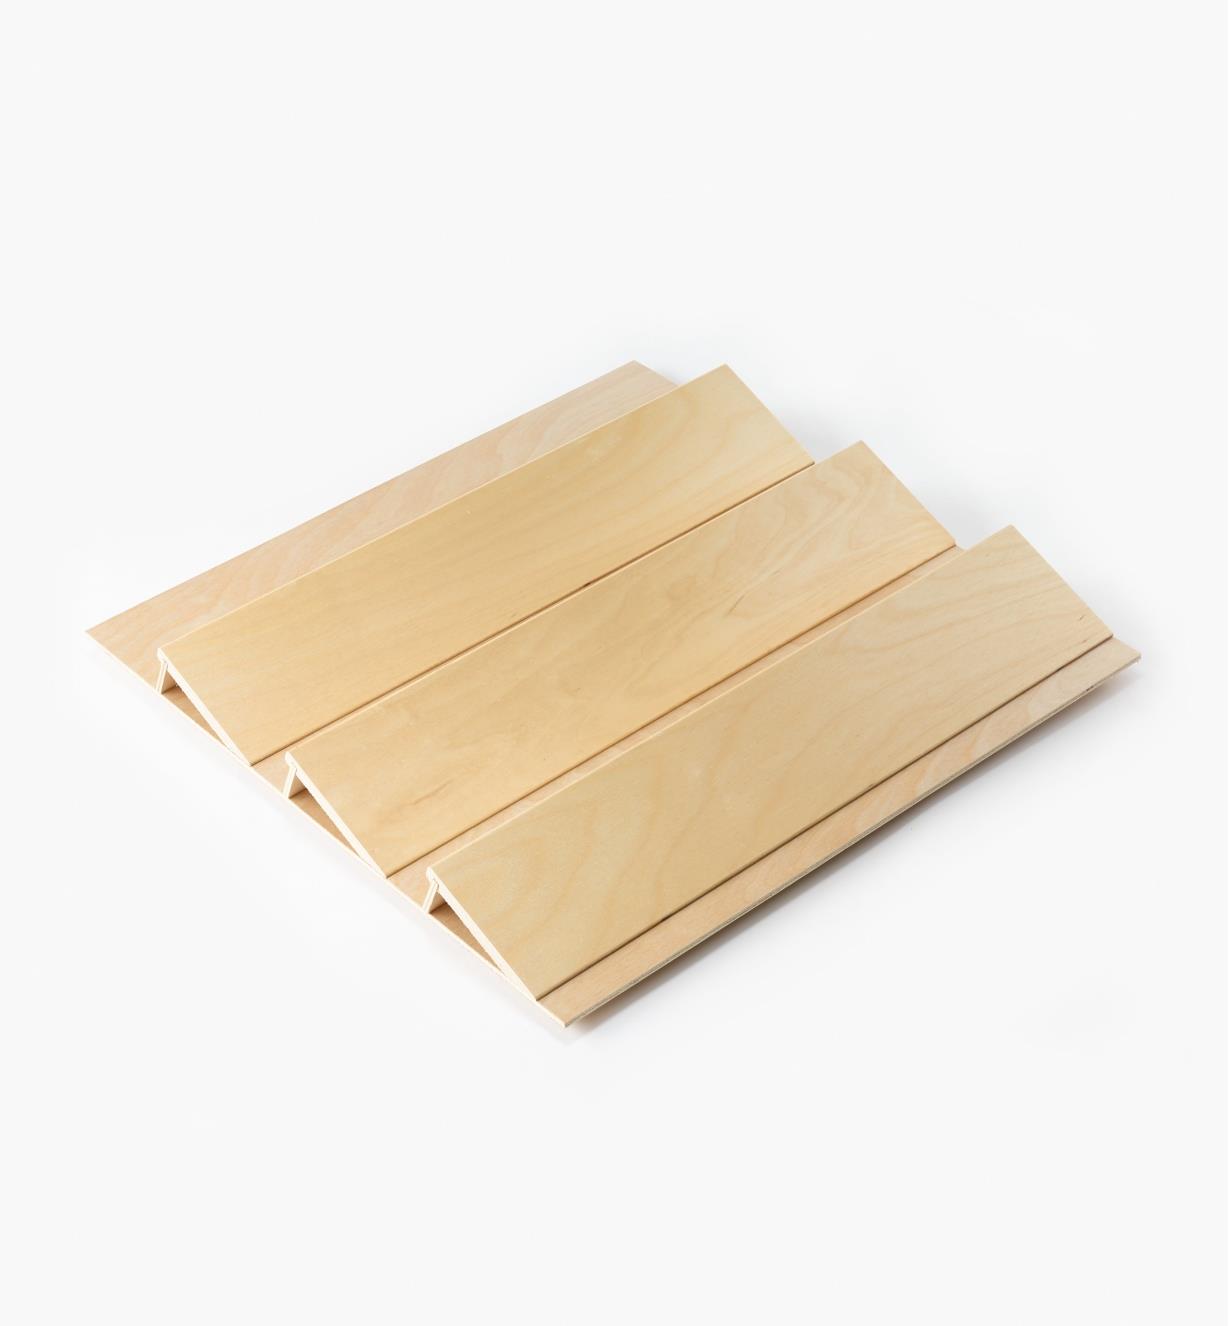 12K7424 - Support à épices en bois pour tiroir, 19 po